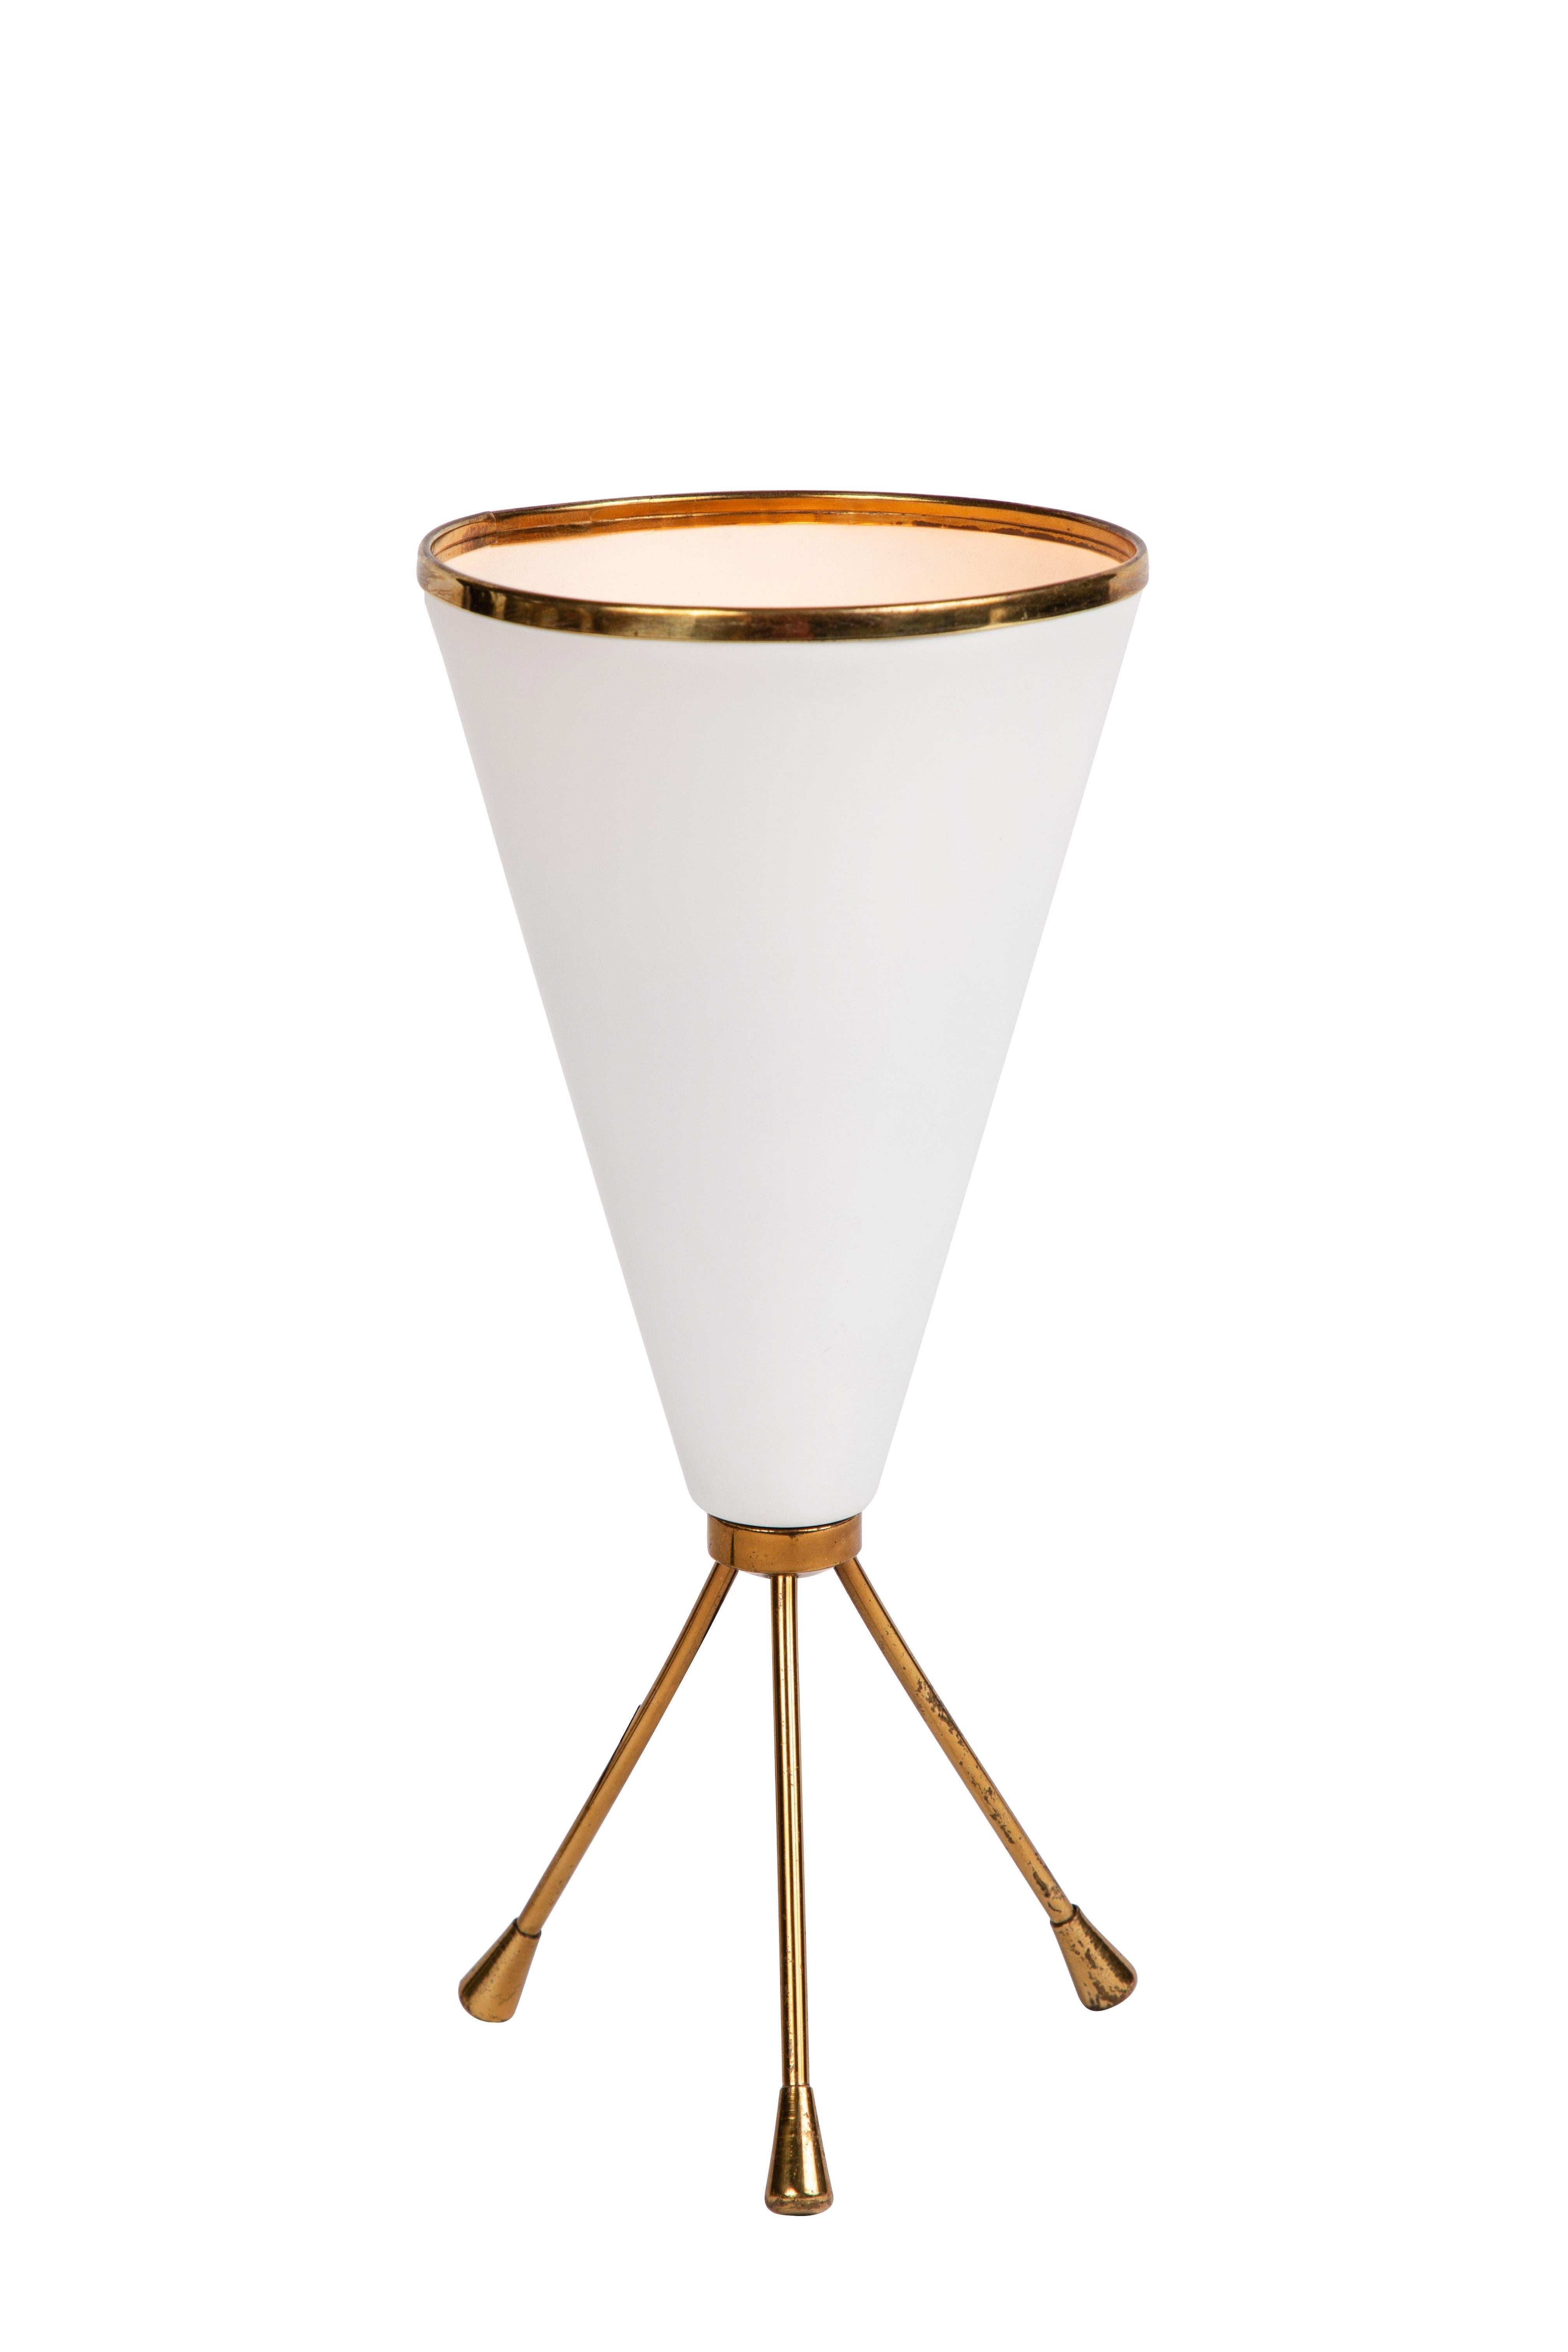 lampe de table tripode des années 1950 en blanc et laiton attribuée à Stilnovo. Cette lampe de table élégamment sculpturale est caractéristique de l'esthétique très raffinée de l'éclairage italien du milieu du siècle dernier, incarnée par la